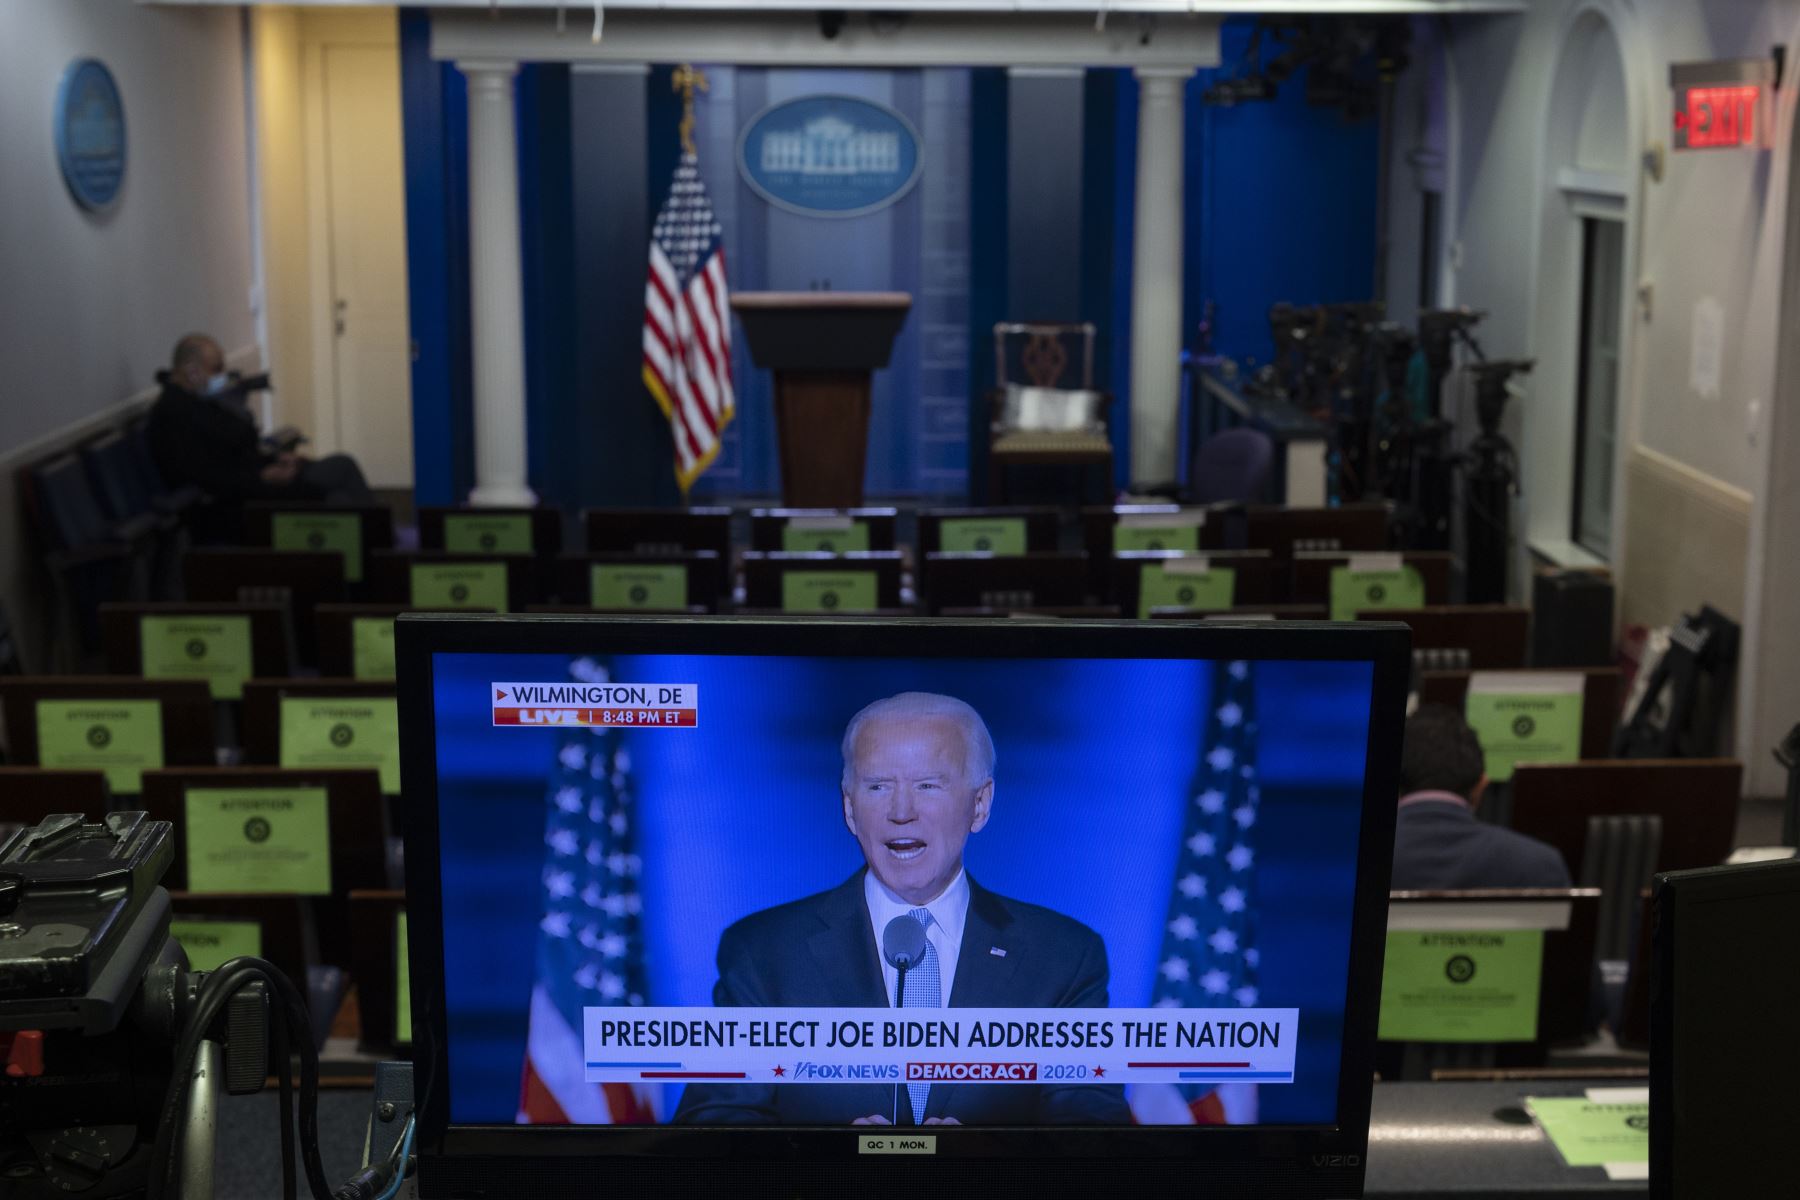 El presidente electo de los Estados Unidos, Joe Biden, es visto mientras pronuncia su discurso de aceptación, en un monitor en la Sala de Información Brady en la Casa Blanca en Washington.
Foto: AFP